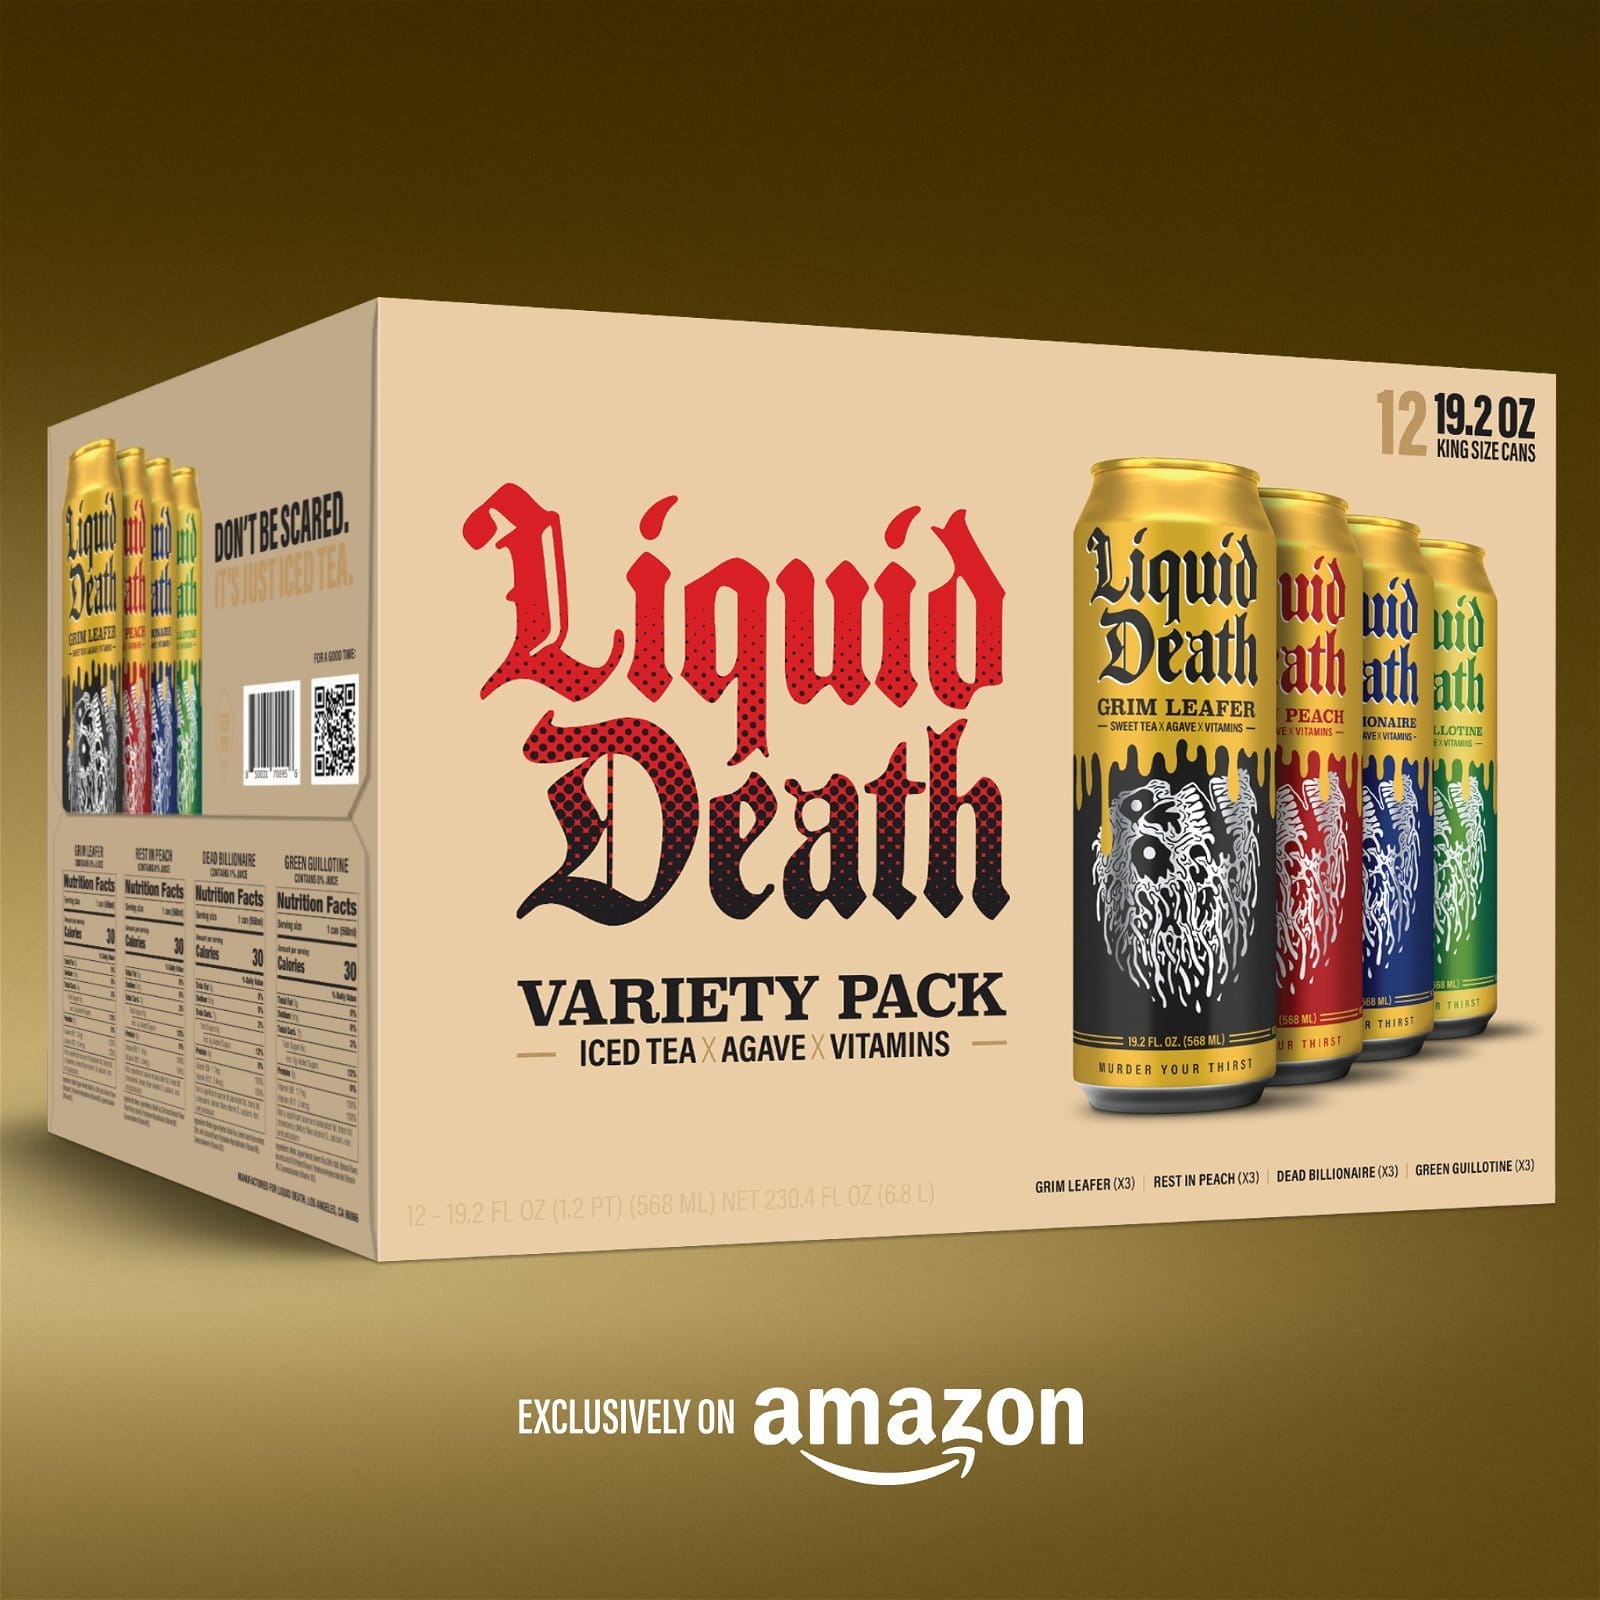 New Liquid Death Iced Tea Variety Pack